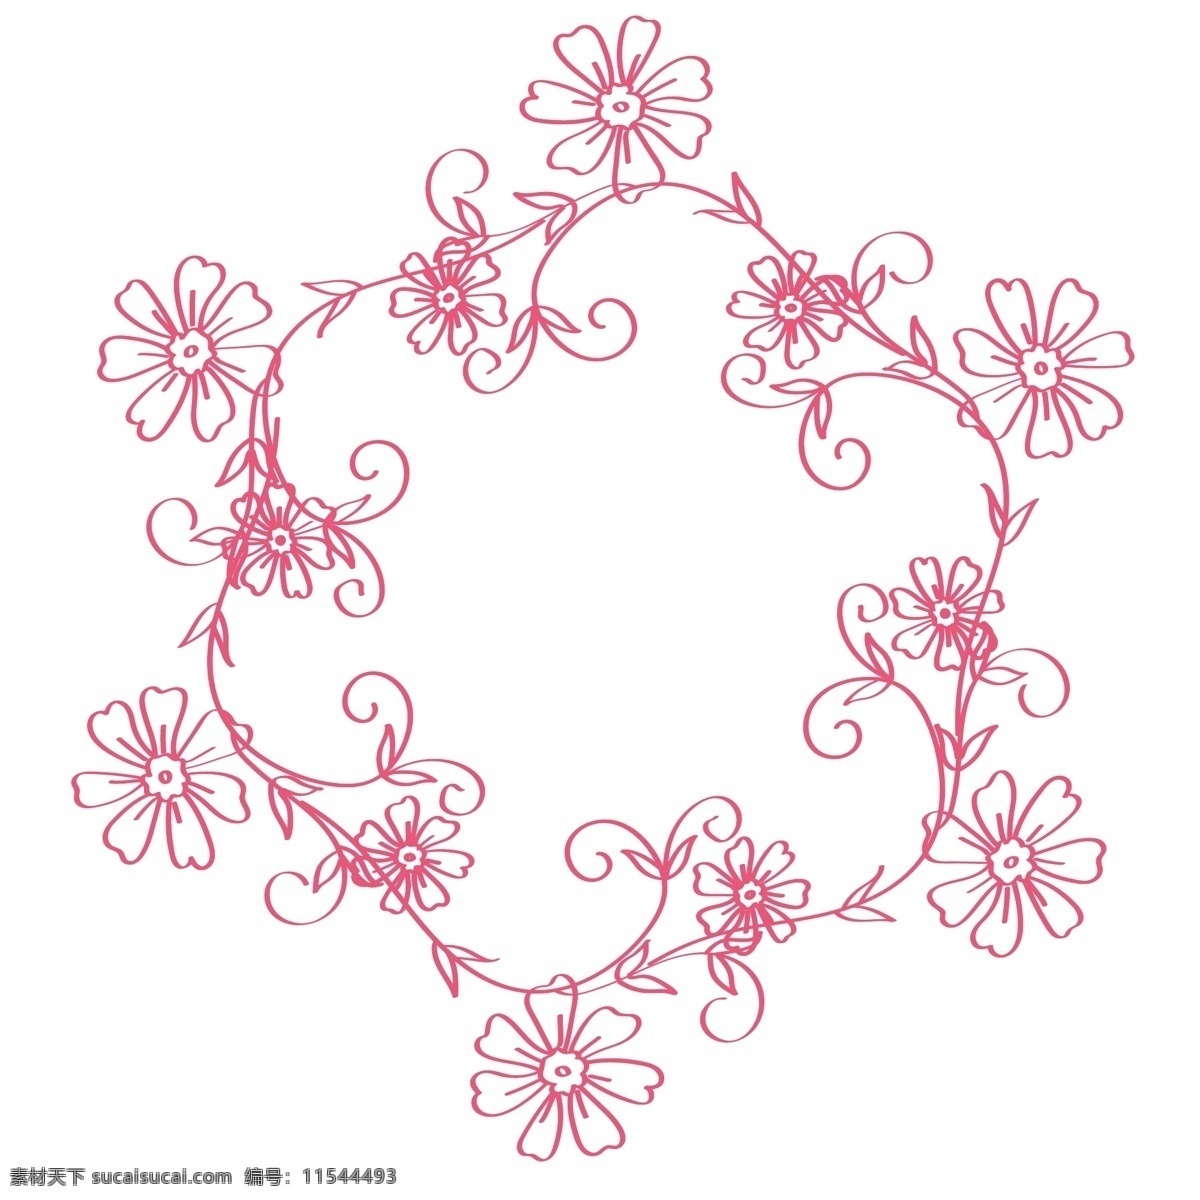 矢量 花朵 手绘 线条 线性 图形 粉红色 蔓藤 几何图形 白色 天蓝色 不规则图型